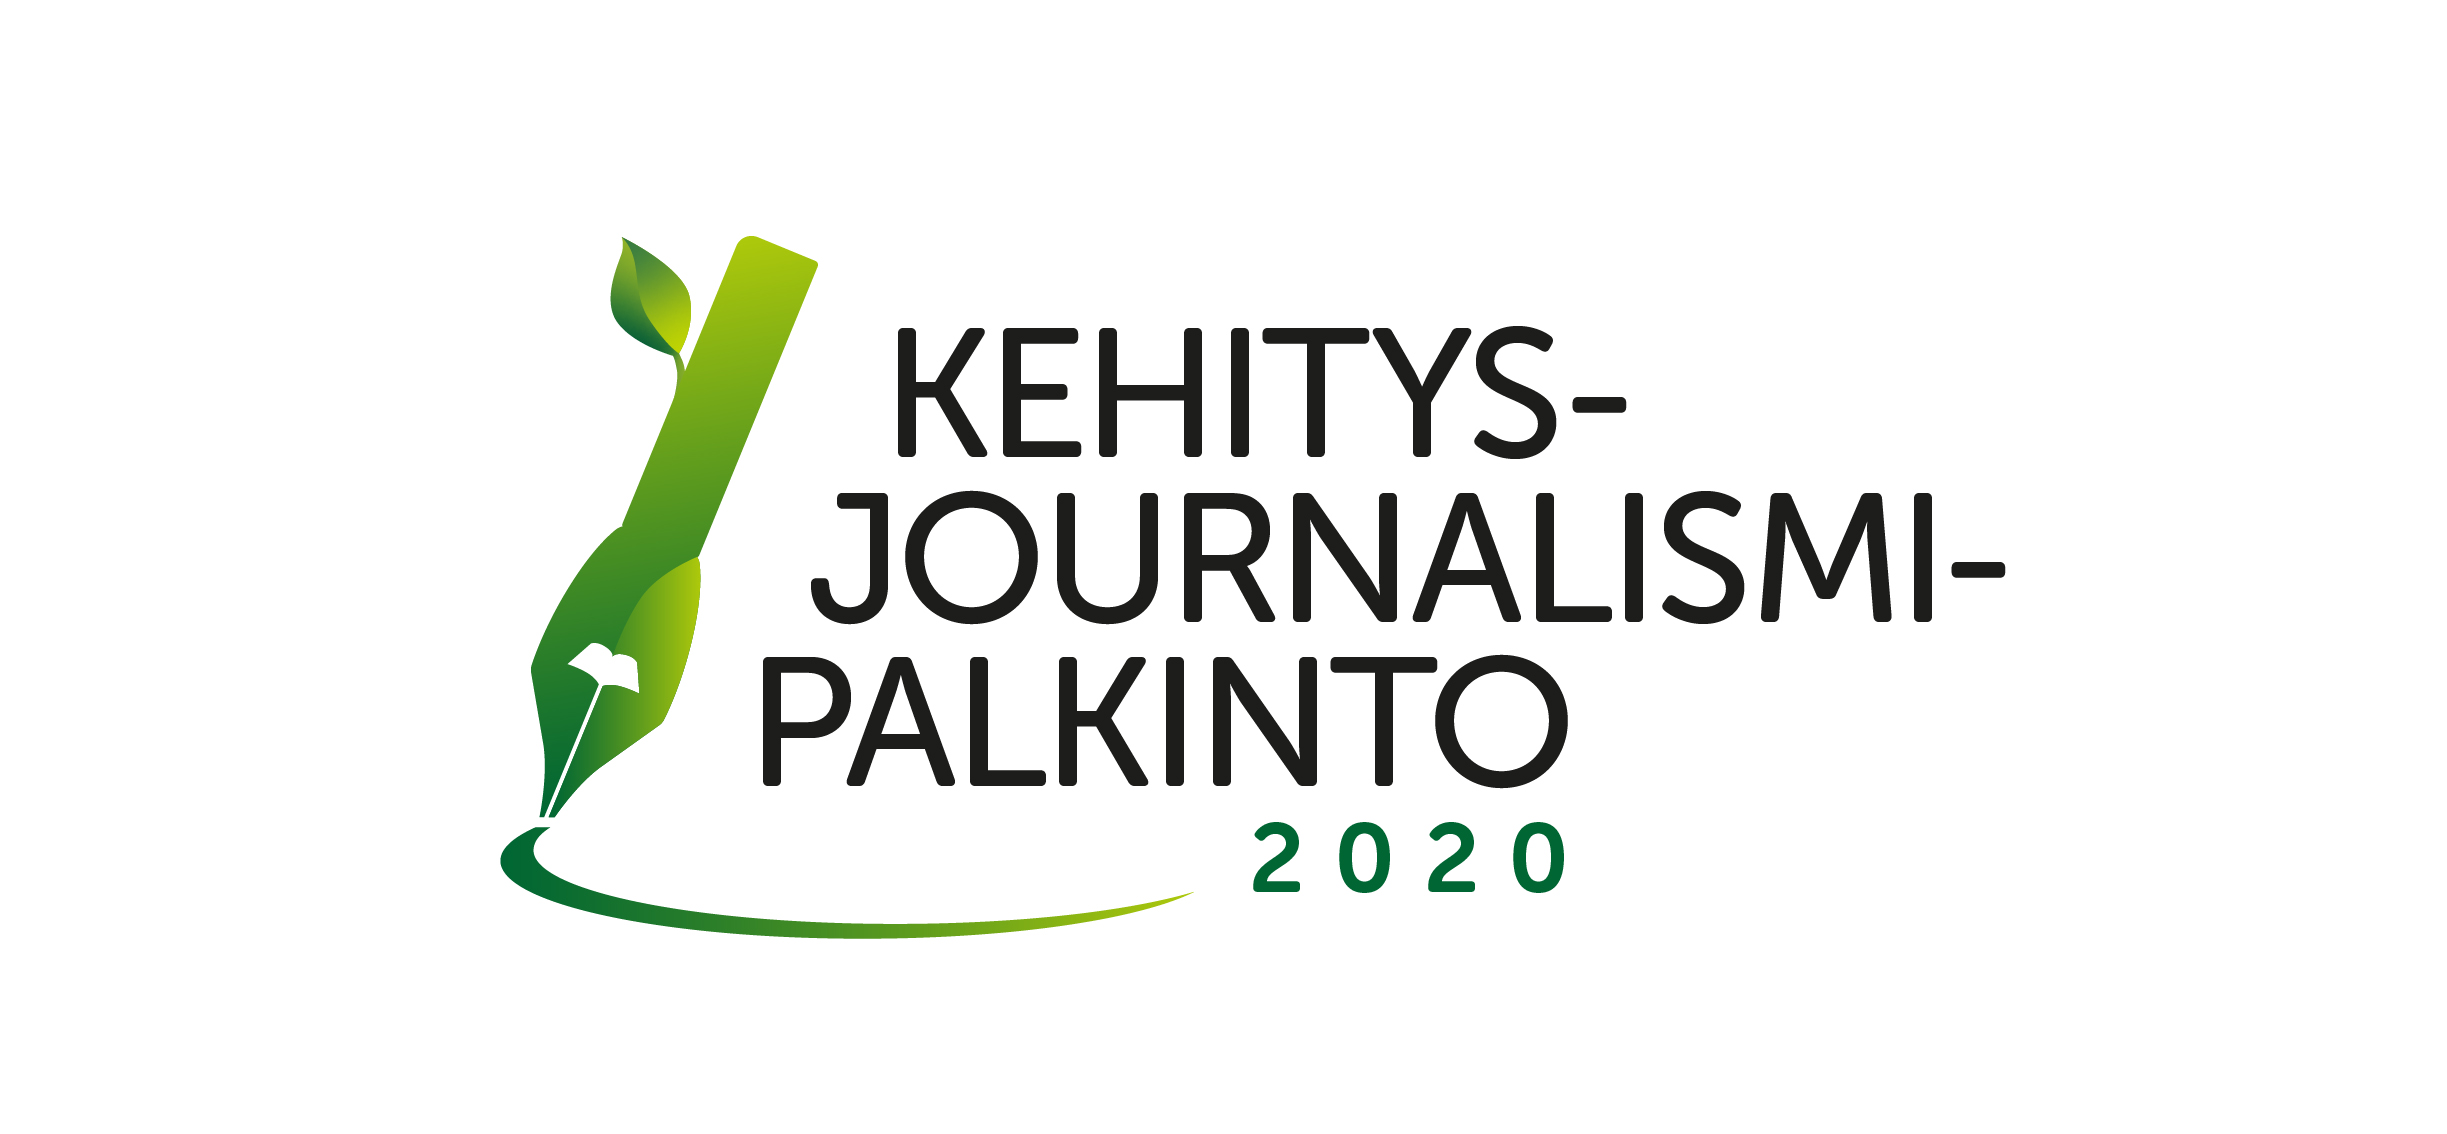 Kehitysjournalismin palkinto -logo